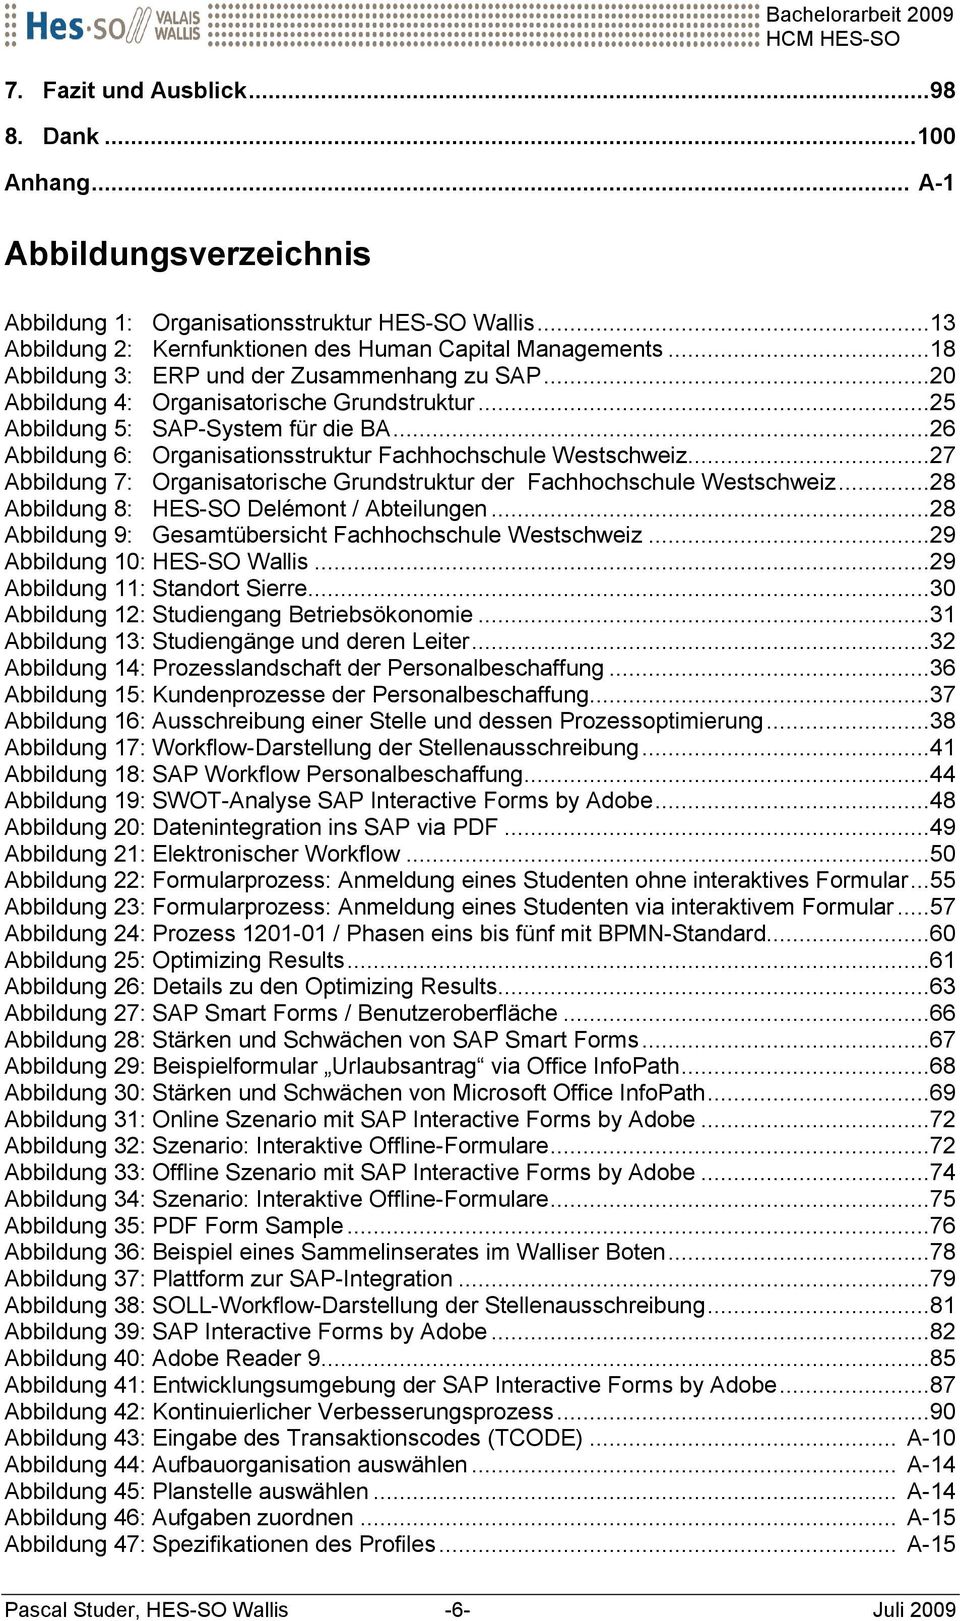 ..26 Abbildung 6: Organisationsstruktur Fachhochschule Westschweiz...27 Abbildung 7: Organisatorische Grundstruktur der Fachhochschule Westschweiz...28 Abbildung 8: HES-SO Delémont / Abteilungen.